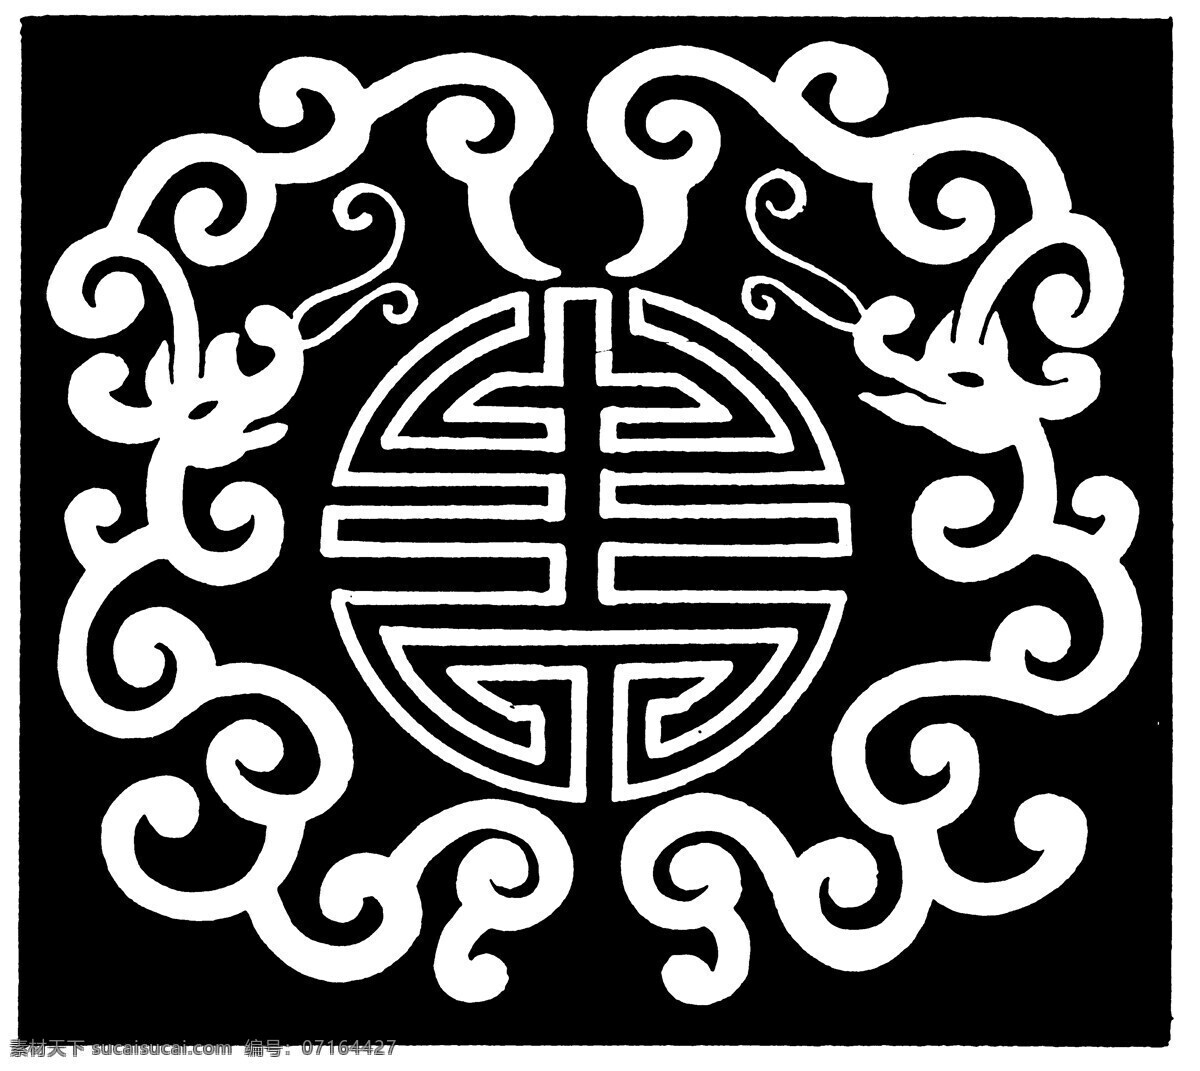 龙凤图案 清代图案 中国 传统 图案 设计素材 龙凤图纹 装饰图案 书画美术 黑色